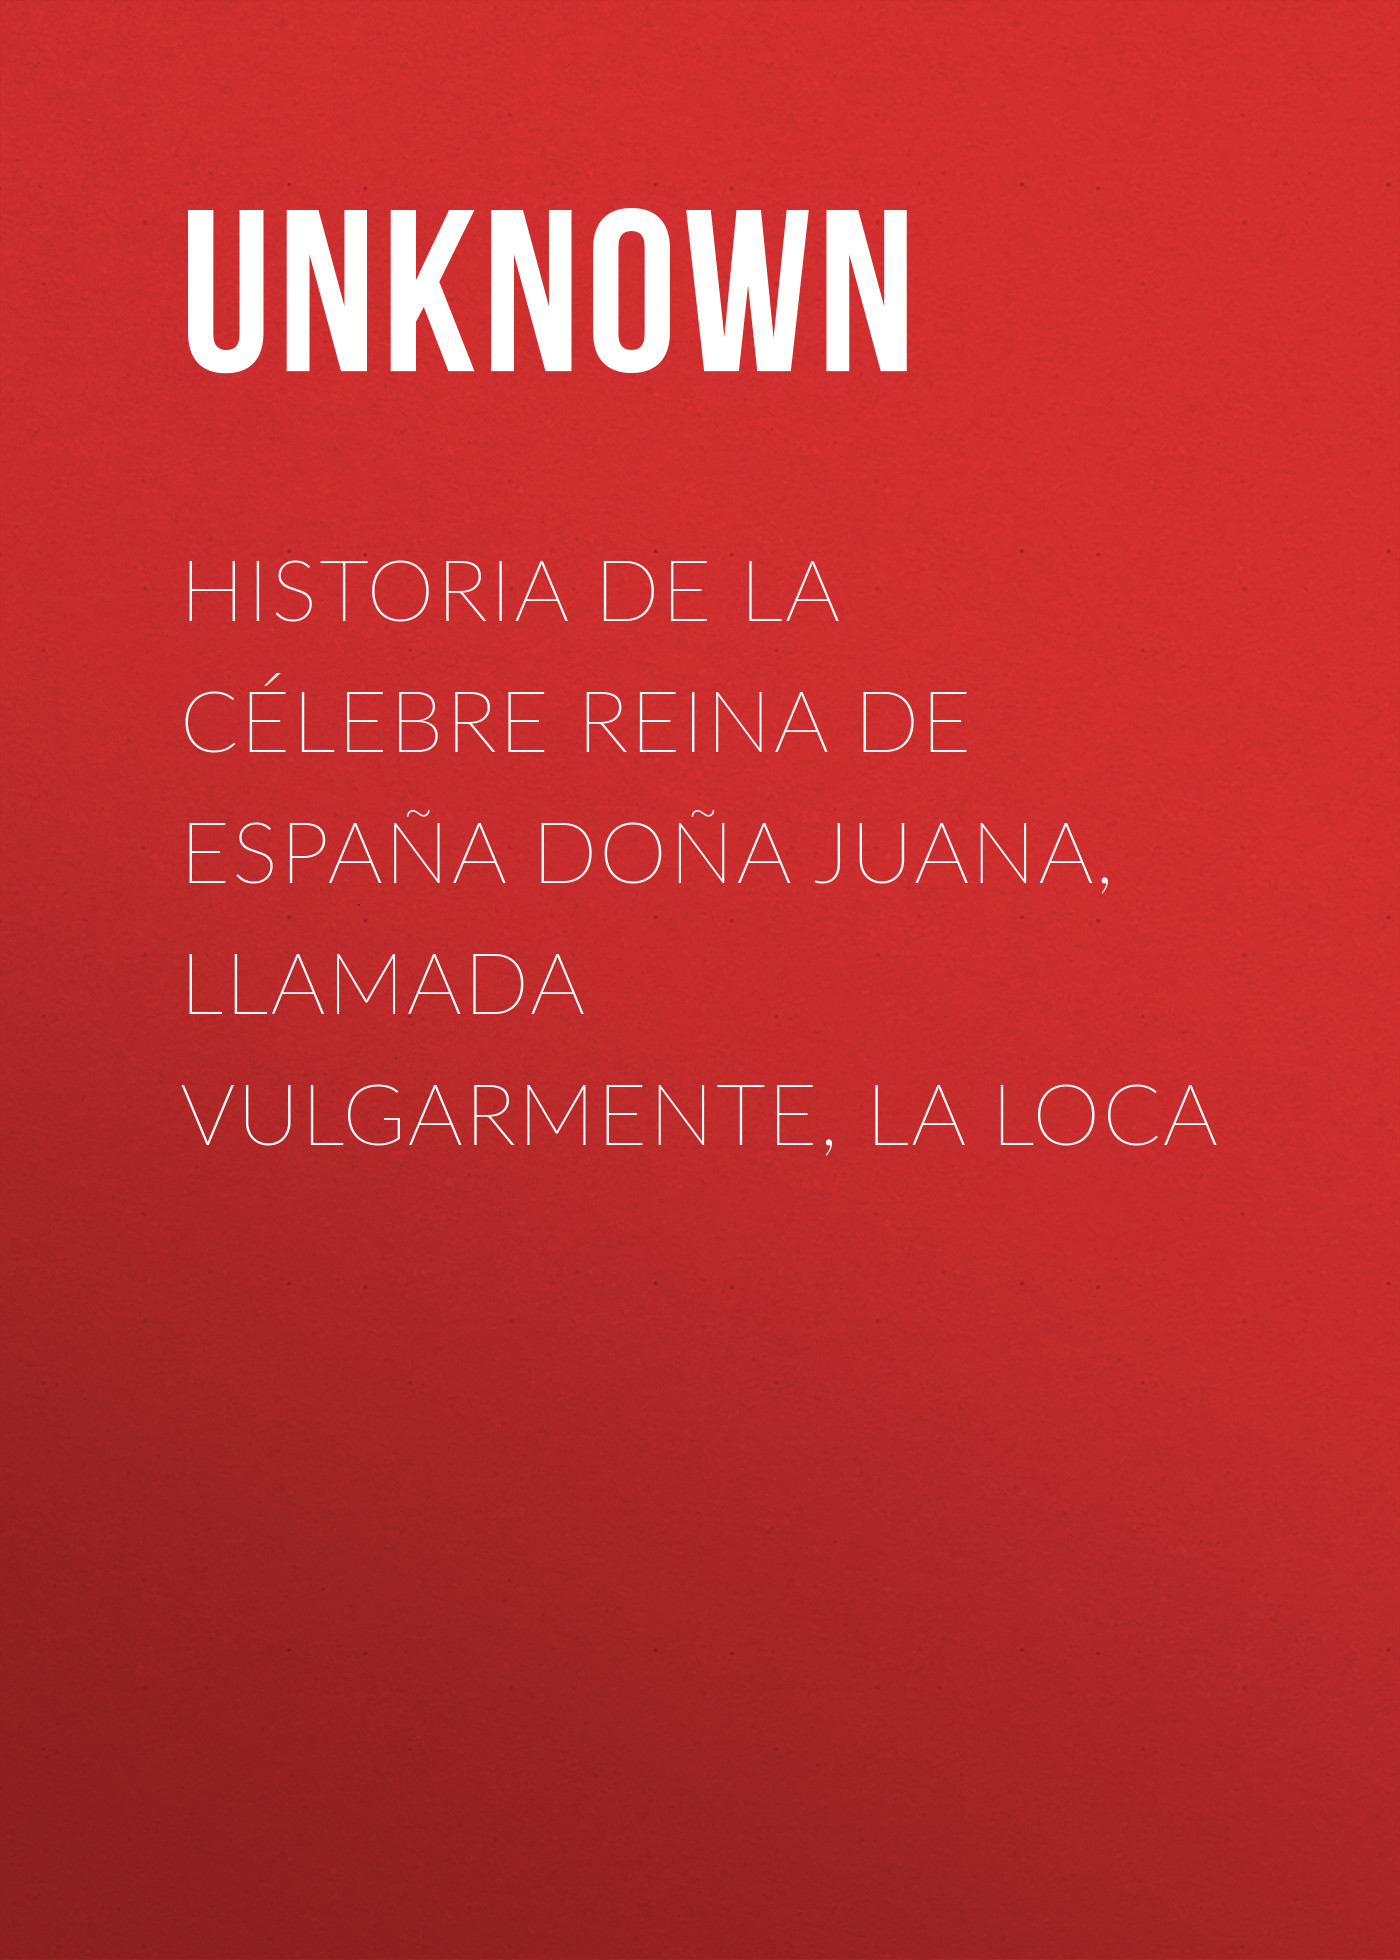 Unknown Historia de la célebre Reina de España Doña Juana, llamada vulgarmente, La Loca